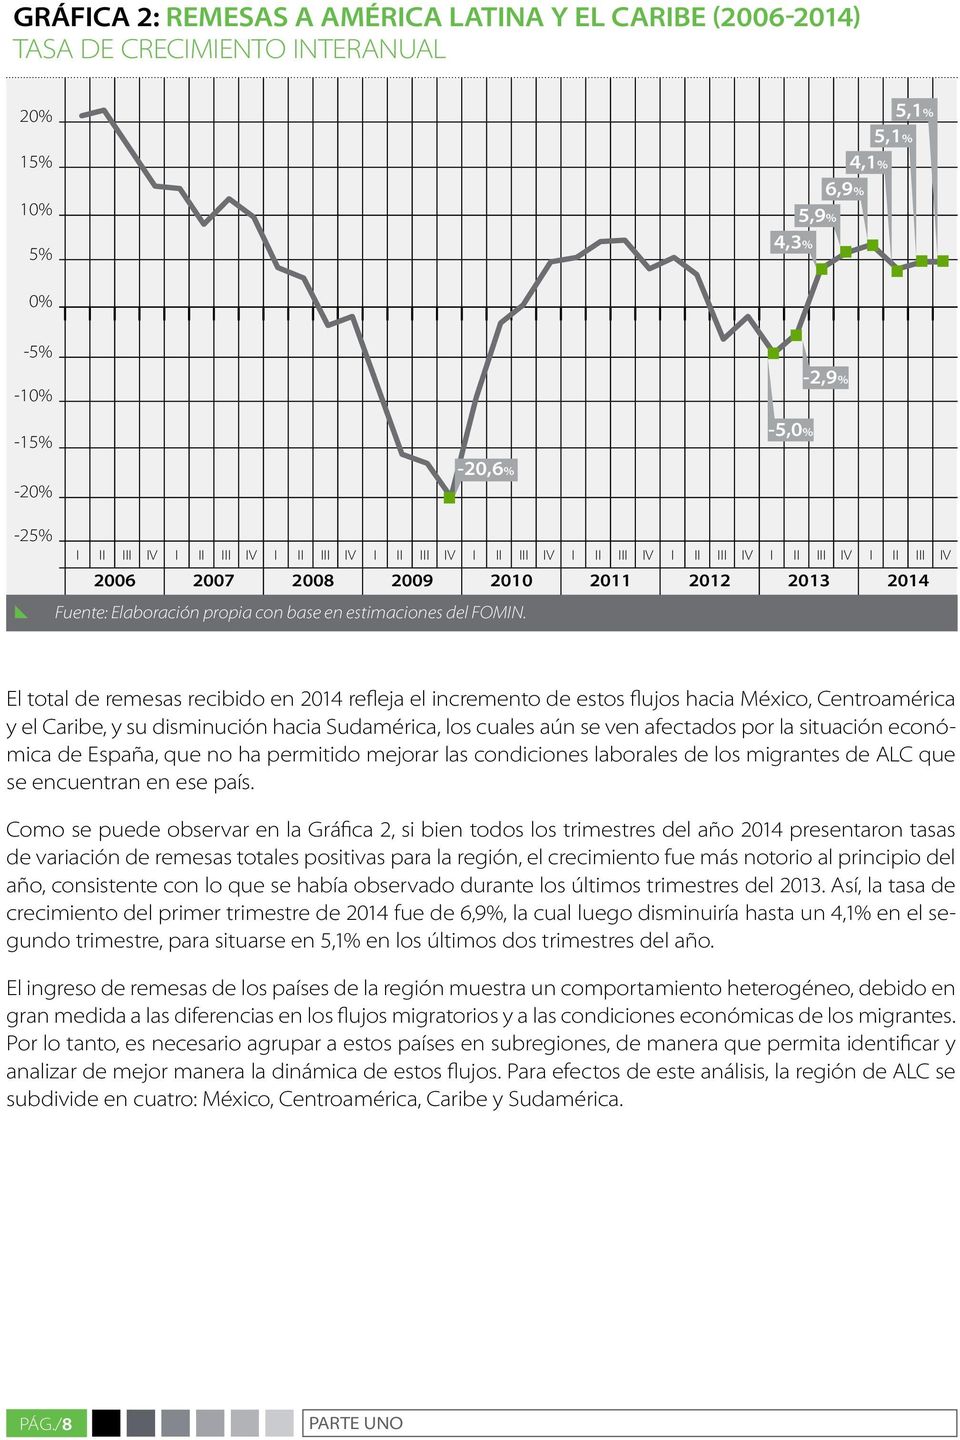 El total de remesas recibido en 2014 refleja el incremento de estos flujos hacia México, Centroamérica y el Caribe, y su disminución hacia Sudamérica, los cuales aún se ven afectados por la situación